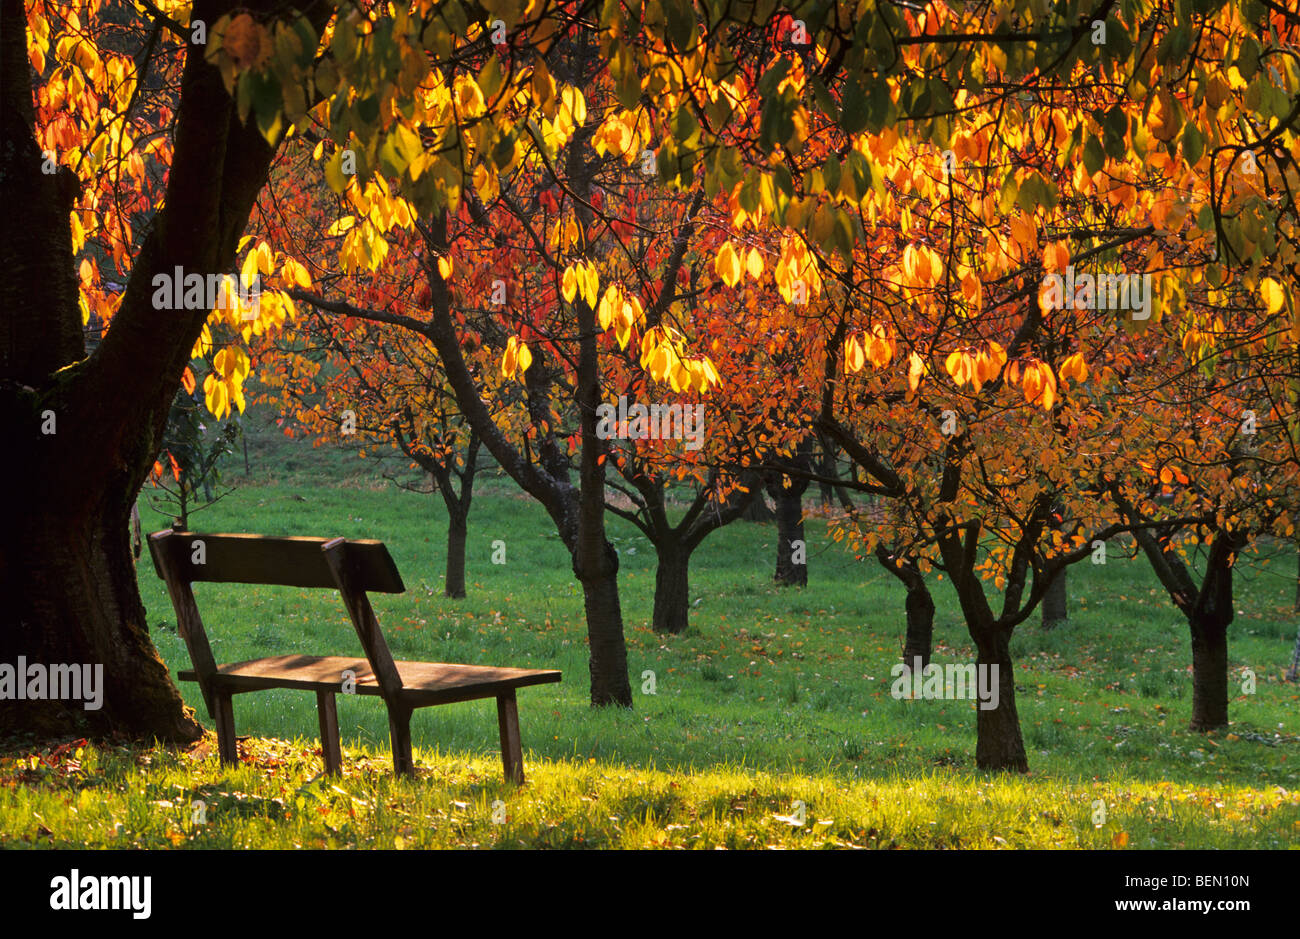 Banc et arbre du cerisier (Prunus avium) verger en automne, Belgique Banque D'Images